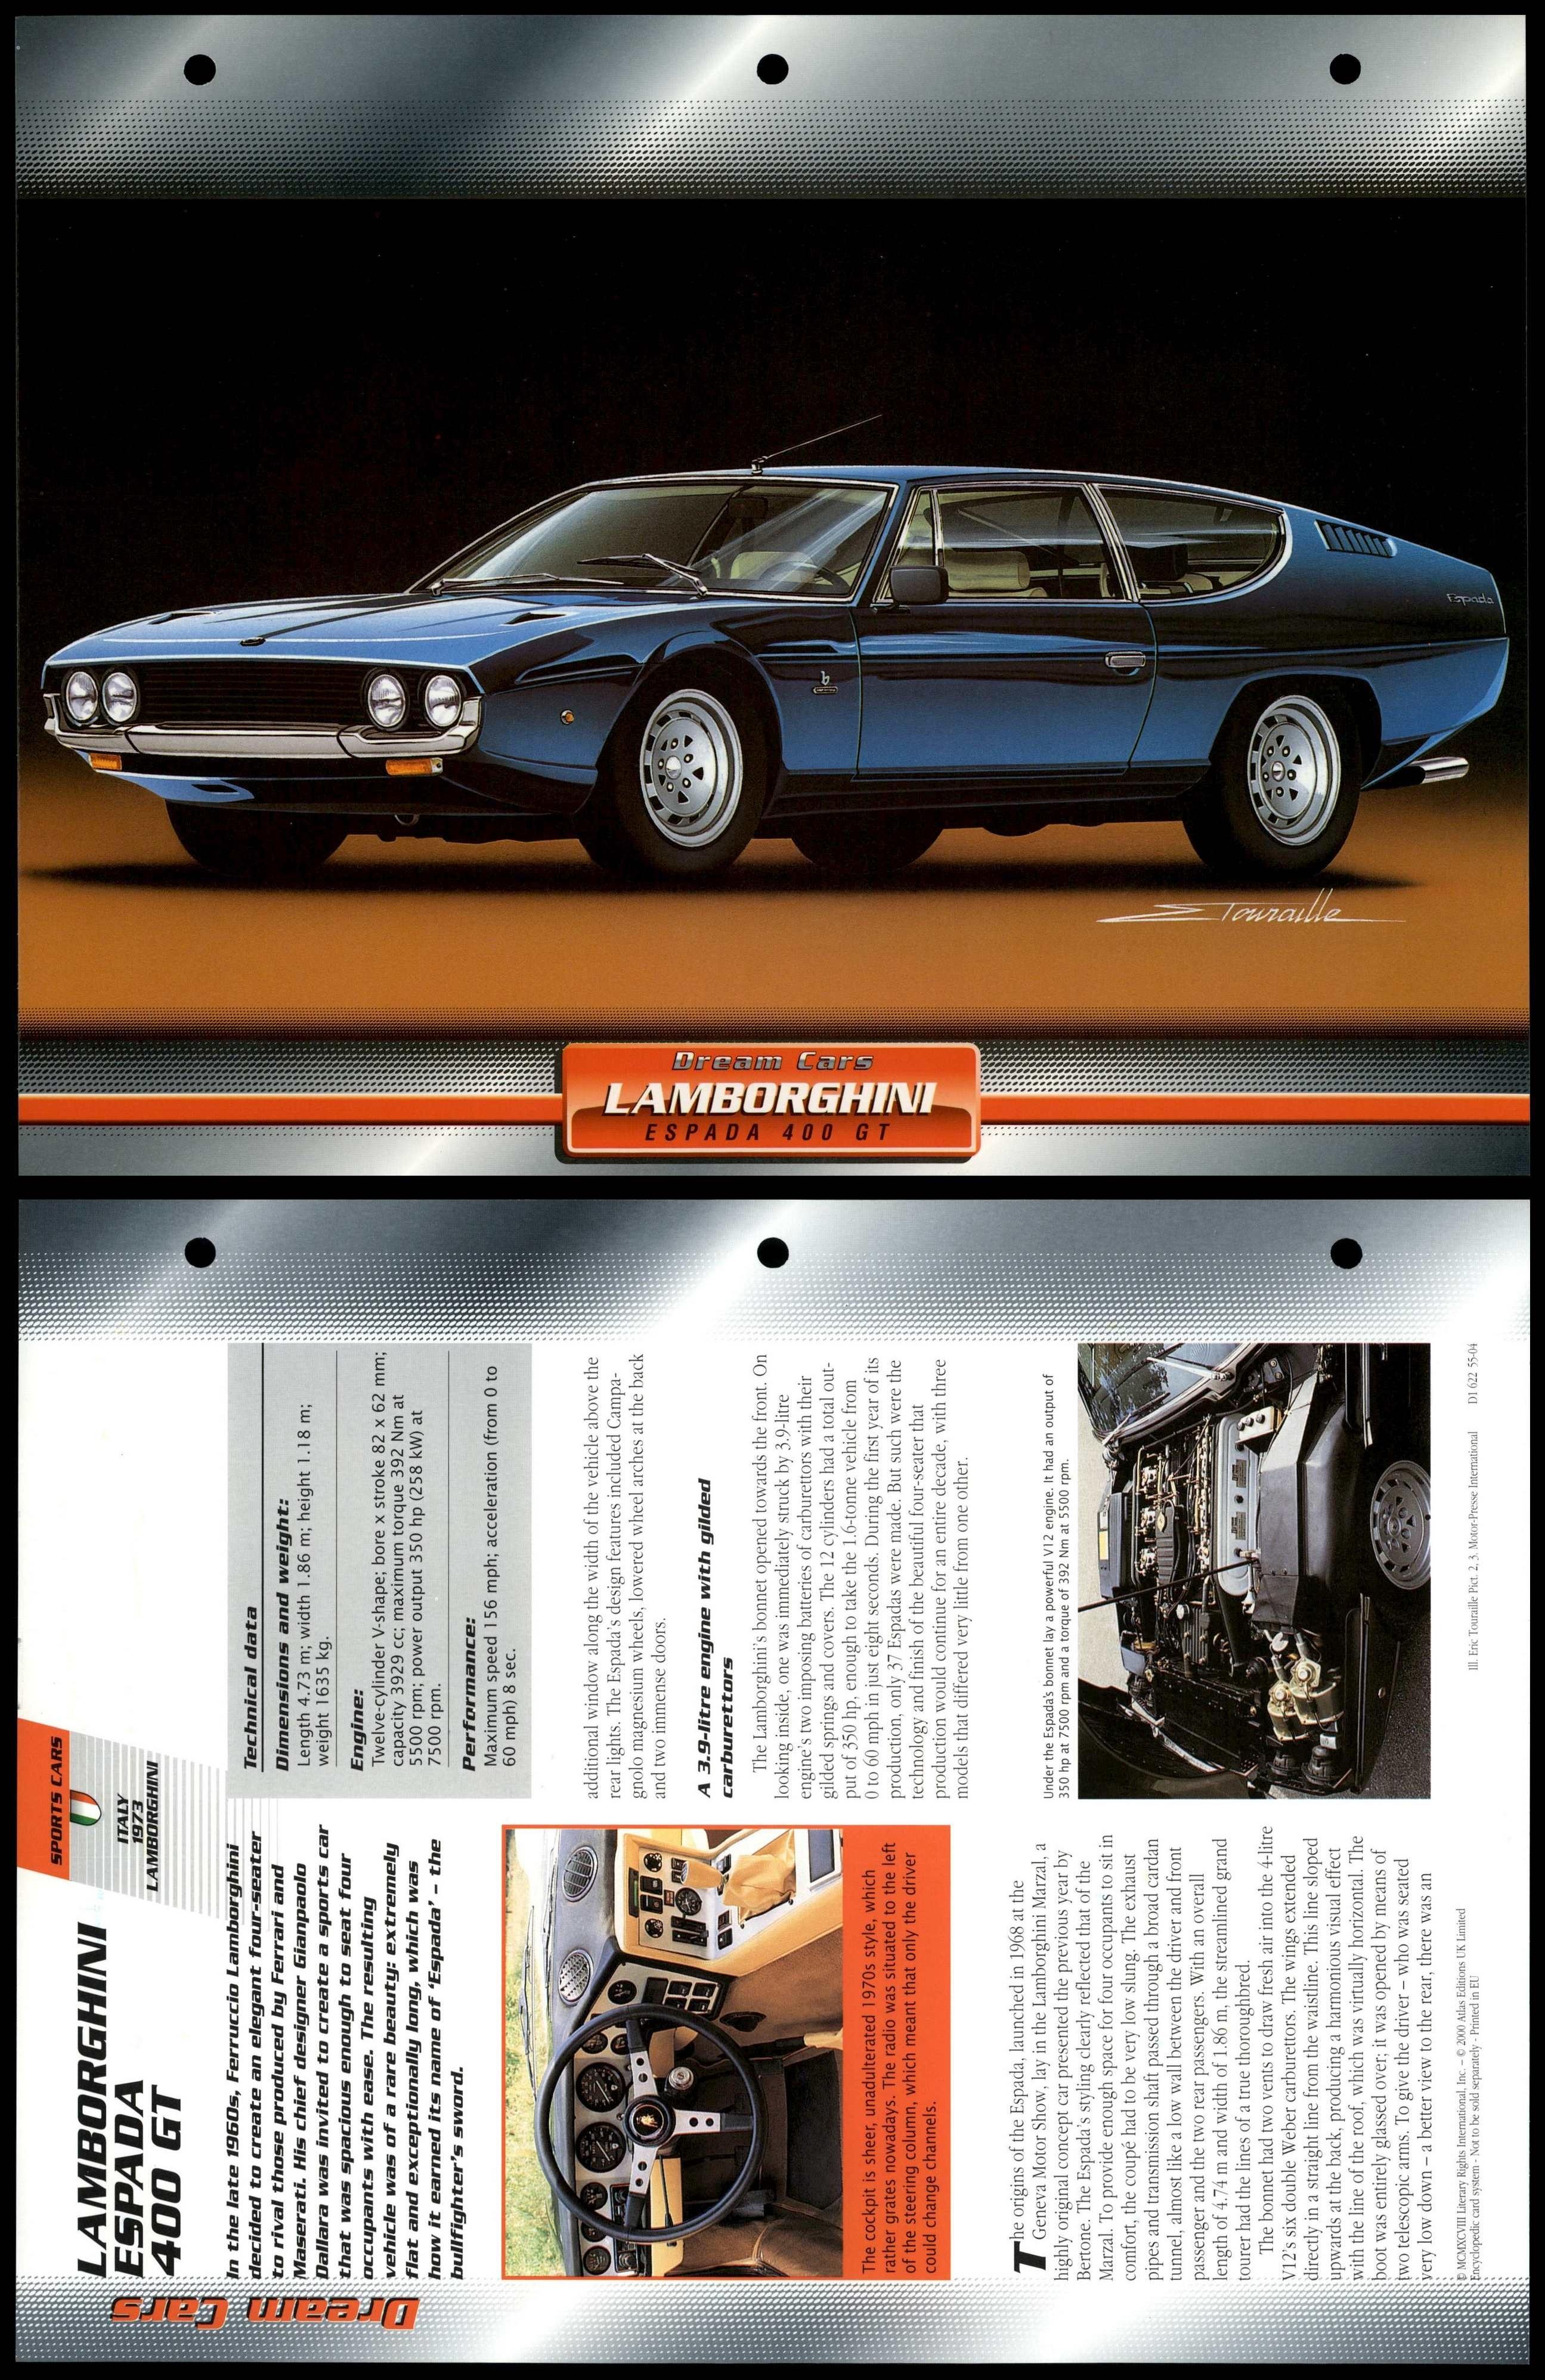 Lamborghini Espada 400 GT - 1973 - Sports - Atlas Dream Cars Fact File Card